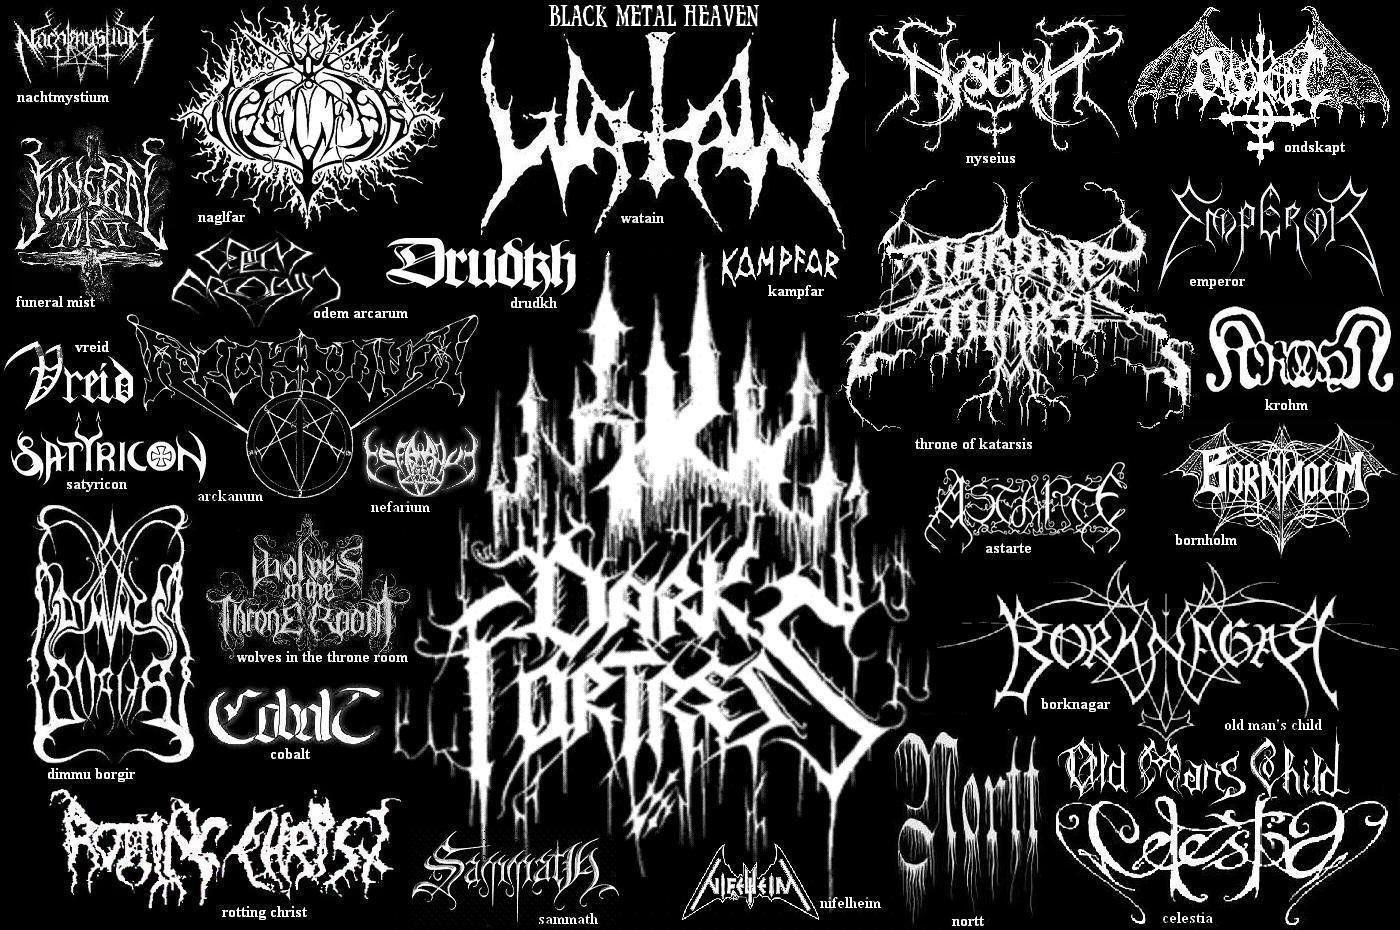 Black Metal Logo - may the devil take us: Black Metal Logos